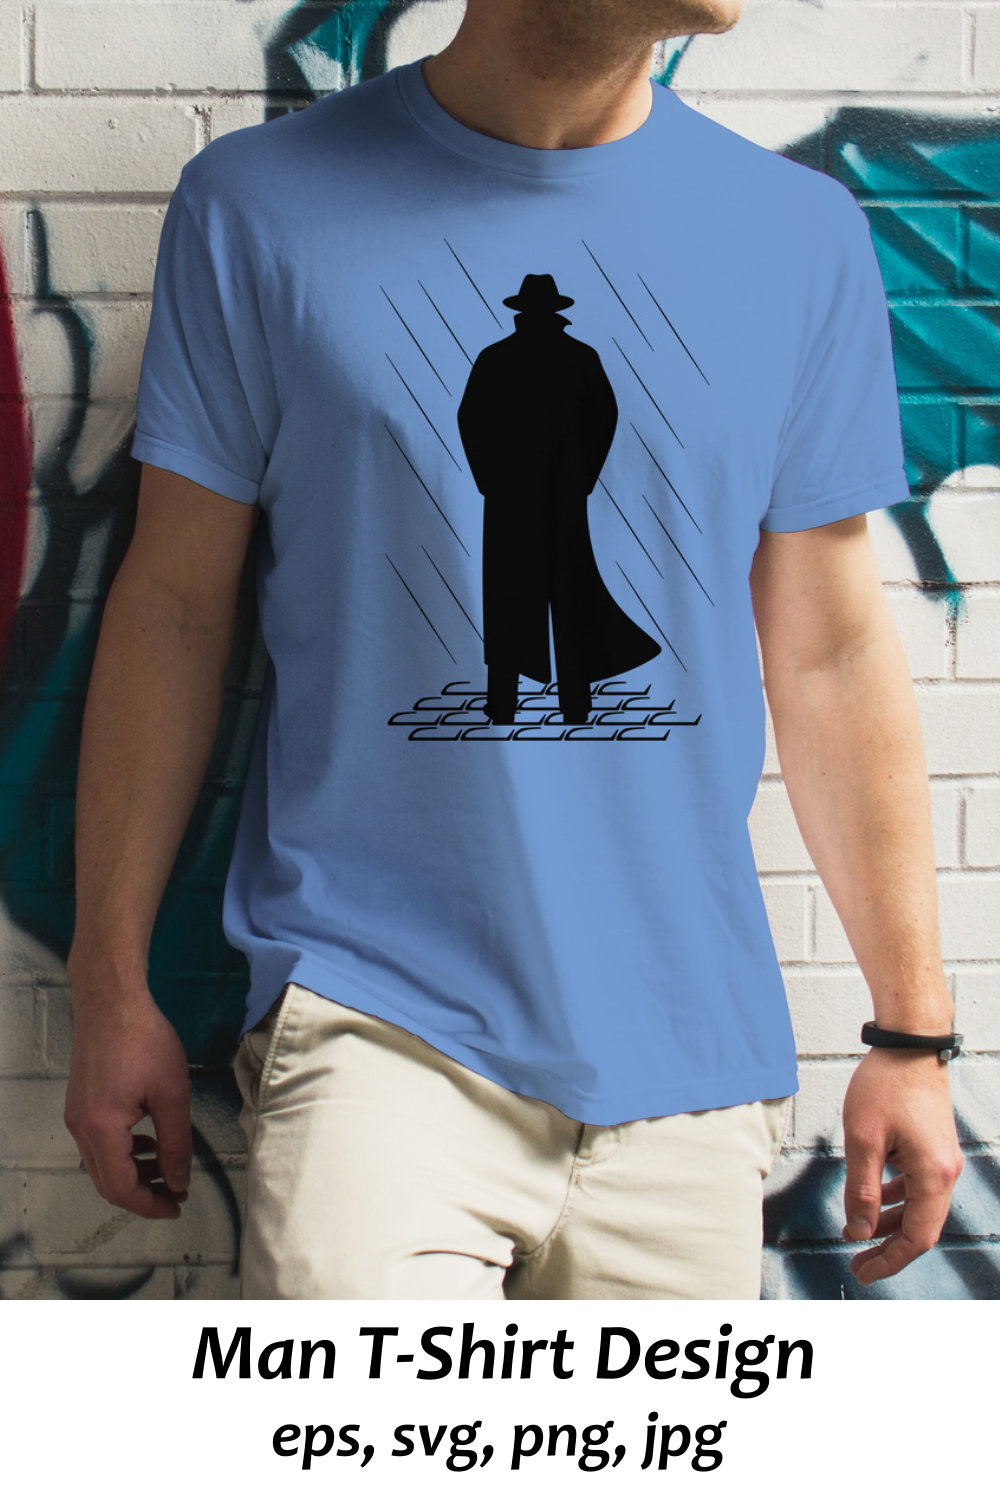 Man T-Shirt Sublimation pinterest preview image.